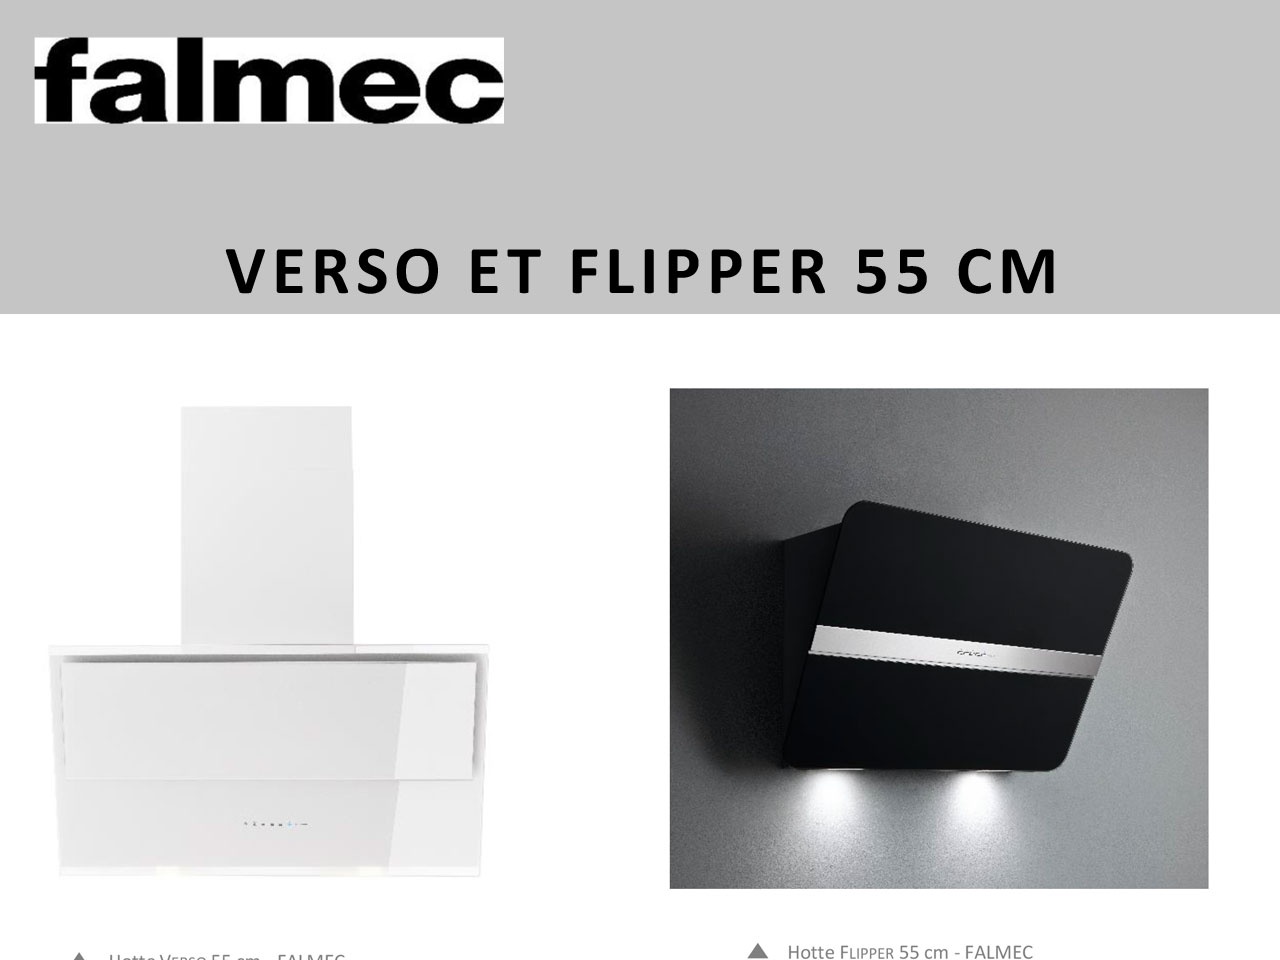 FALMEC propose une nouvelle version des hottes VERSO et FLIPPER, pour les petites cuisines